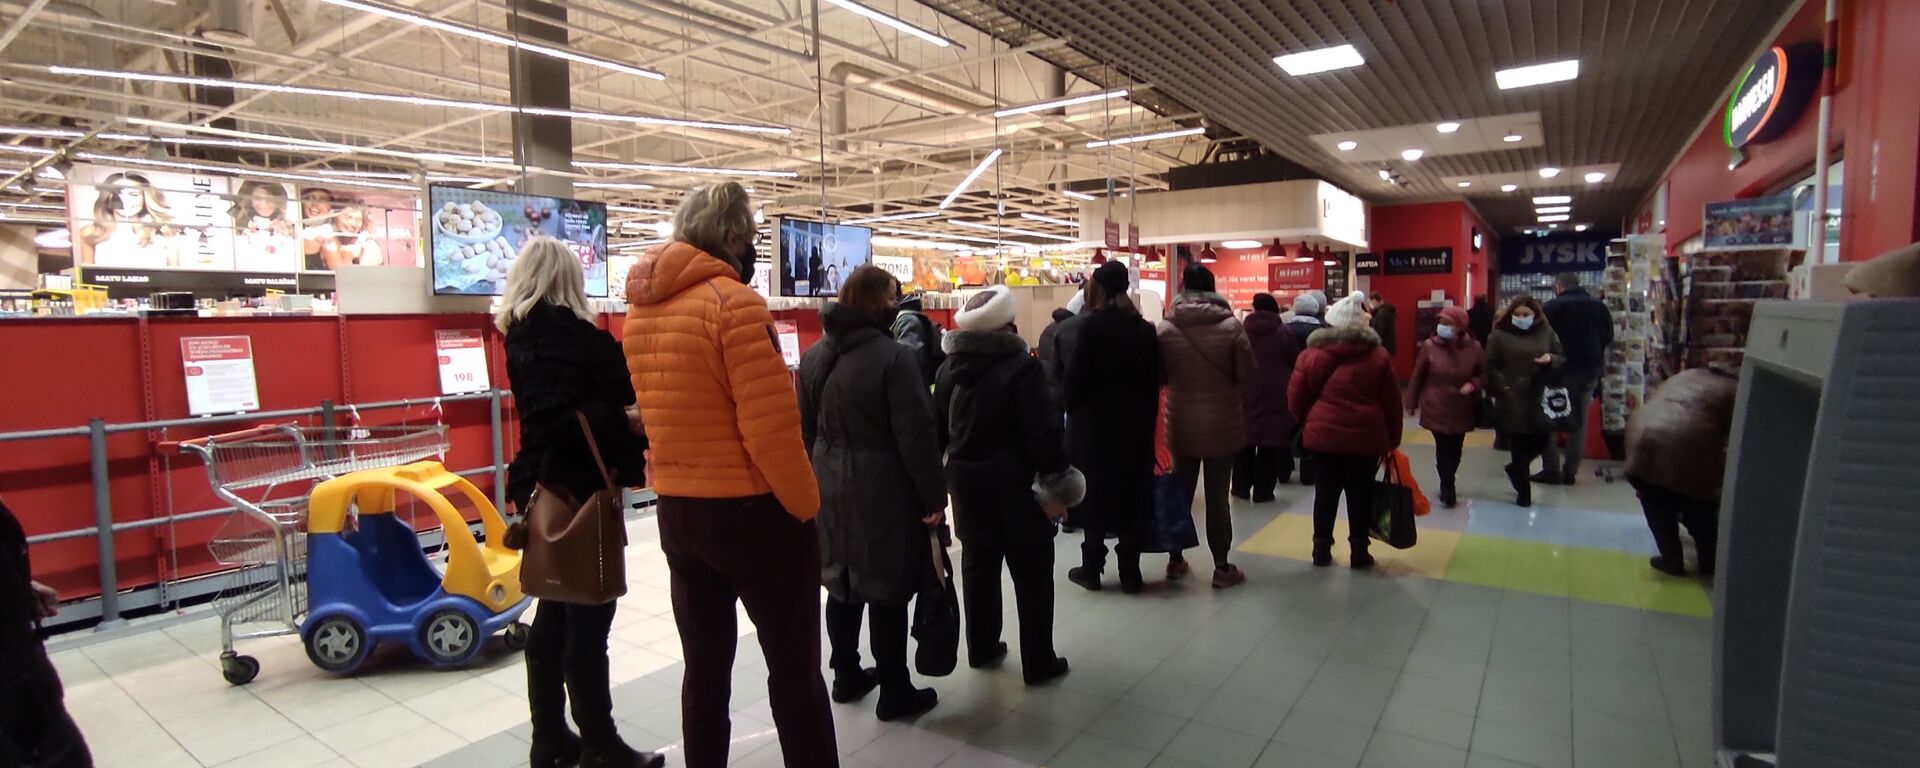 Очередь на вход в торговый зал супермаркета Rimi в Риге - Sputnik Латвия, 1920, 16.10.2021